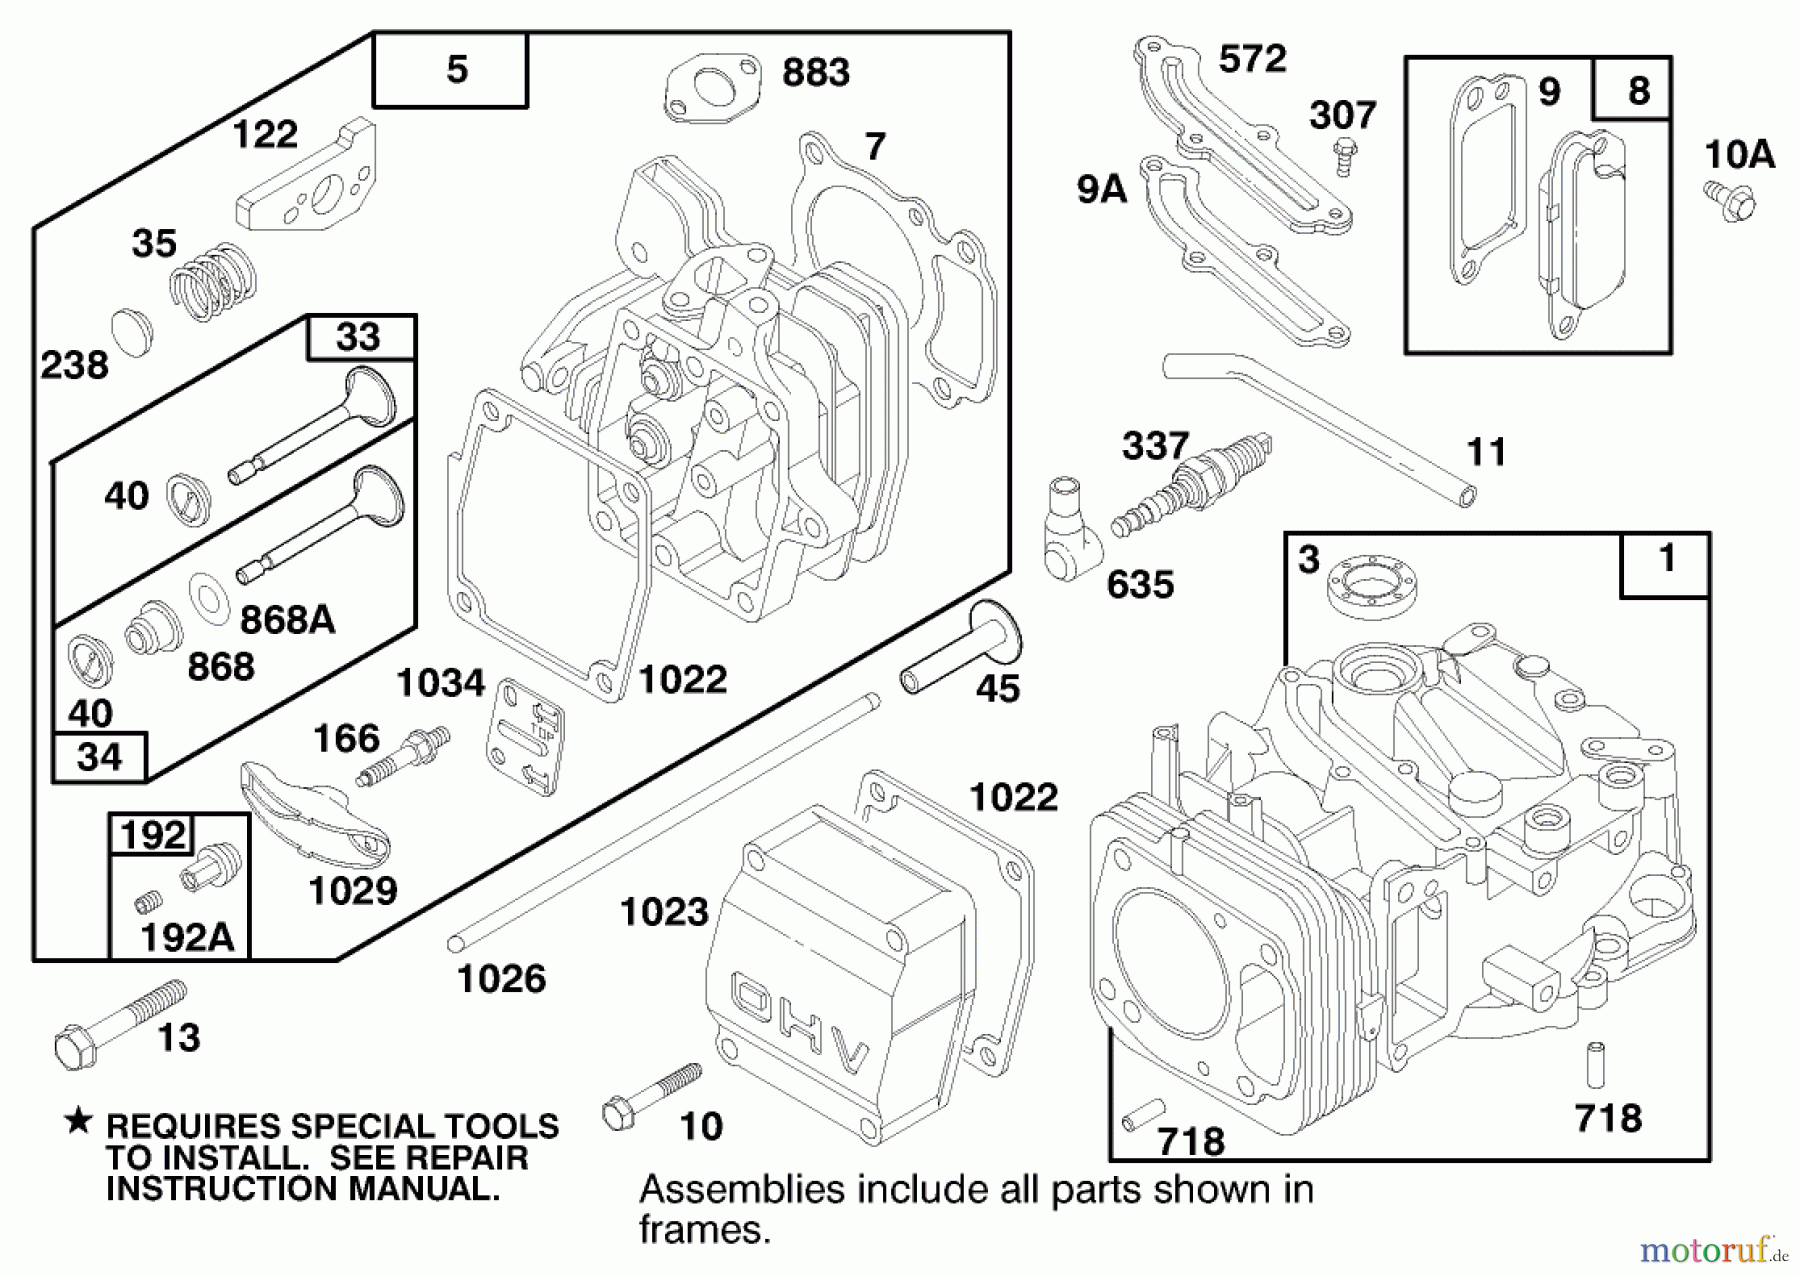  Toro Neu Mowers, Walk-Behind Seite 2 22141 - Toro Lawnmower, 1997 (790000001-799999999) ENGINE GTS 150 #1